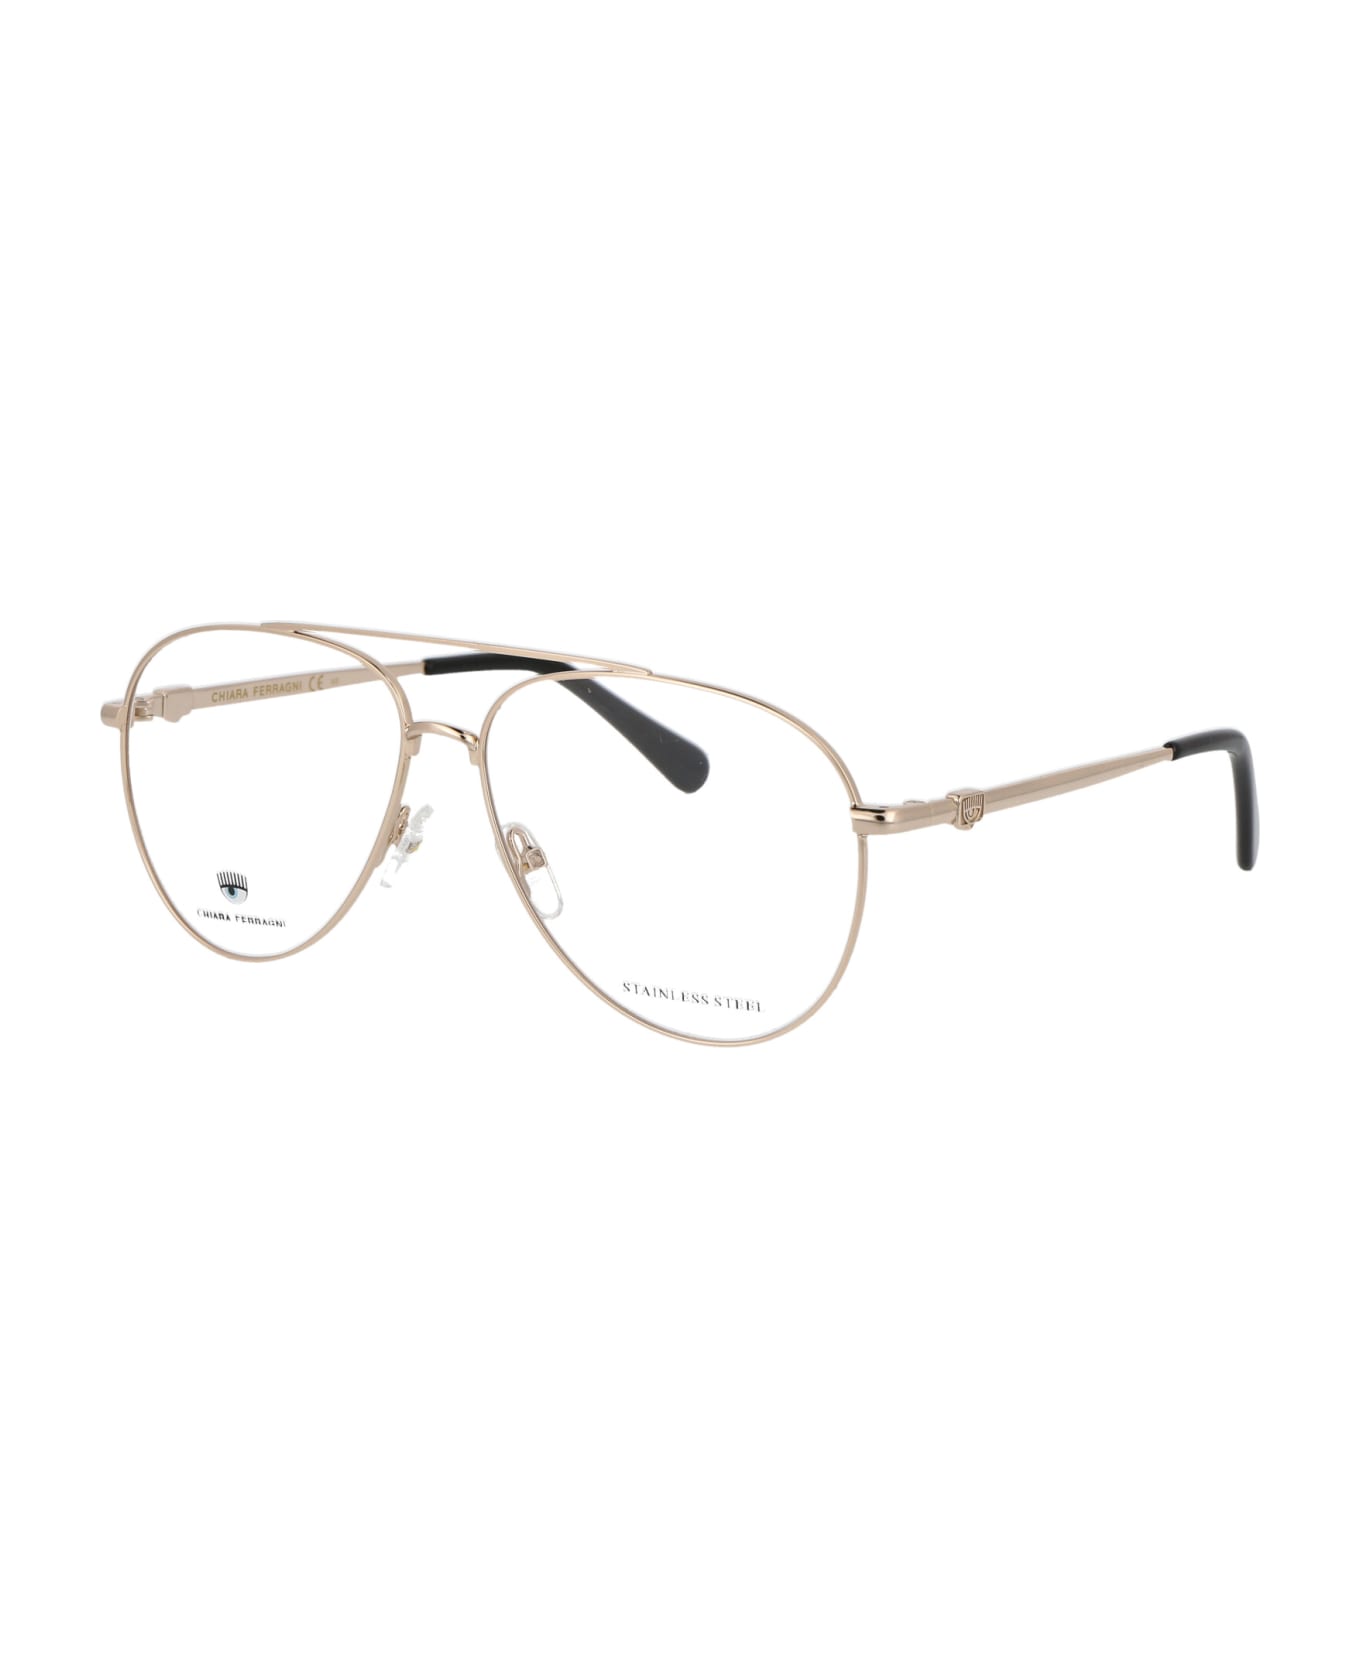 Chiara Ferragni Cf 1009 Glasses - J5G GOLD